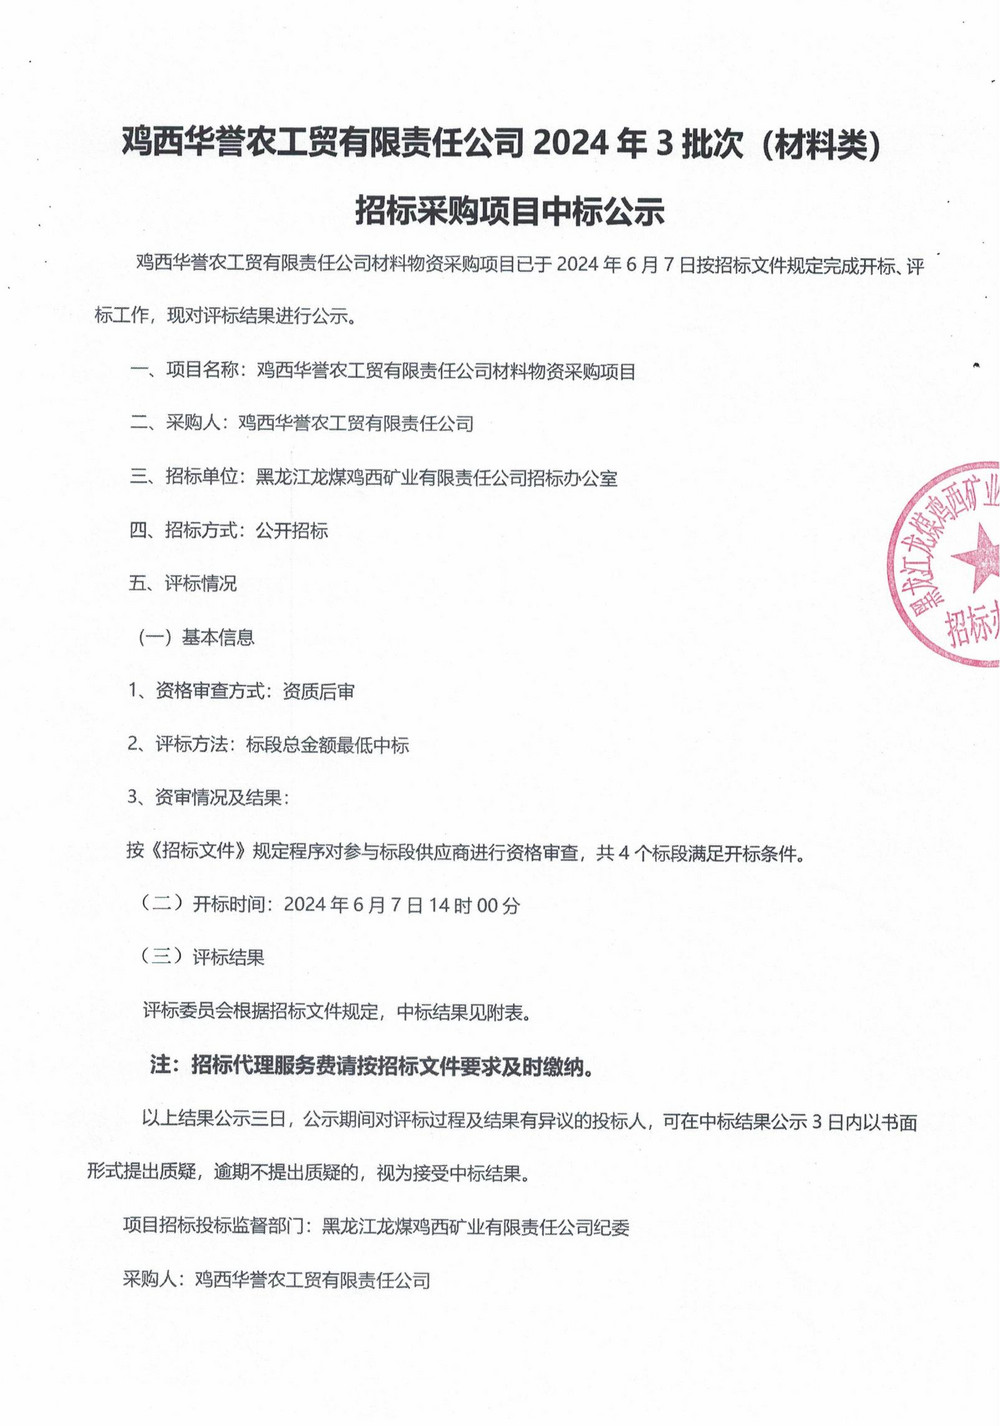 鸡西华誉农工贸有限责任公司3批次材料中标公示_00.jpg